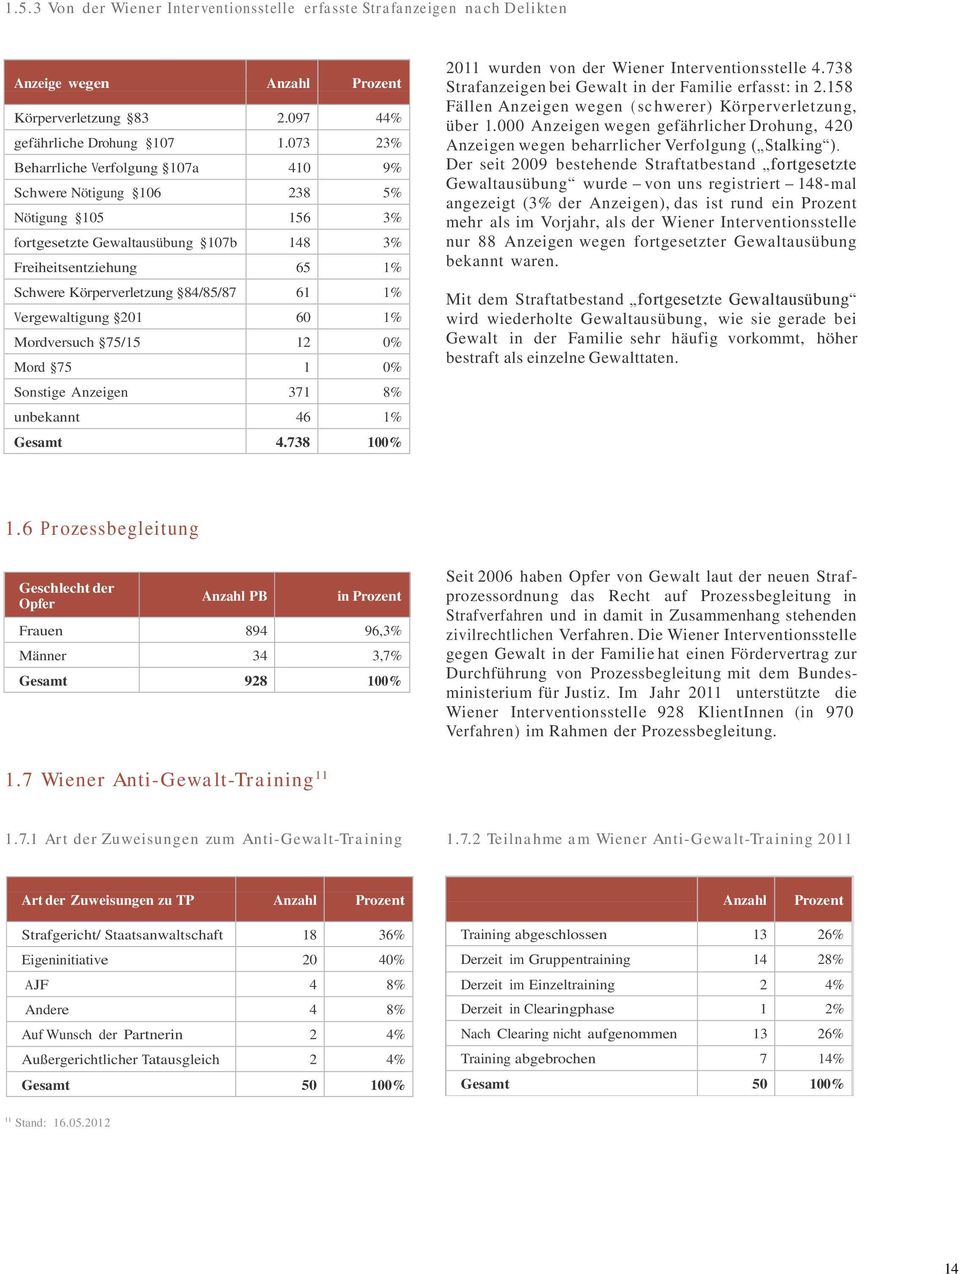 Vergewaltigung 201 60 1% Mordversuch 75/15 12 0% Mord 75 1 0% Sonstige Anzeigen 371 8% unbekannt 46 1% Gesamt 4.738 100% 2011 wurden von der Wiener Interventionsstelle 4.